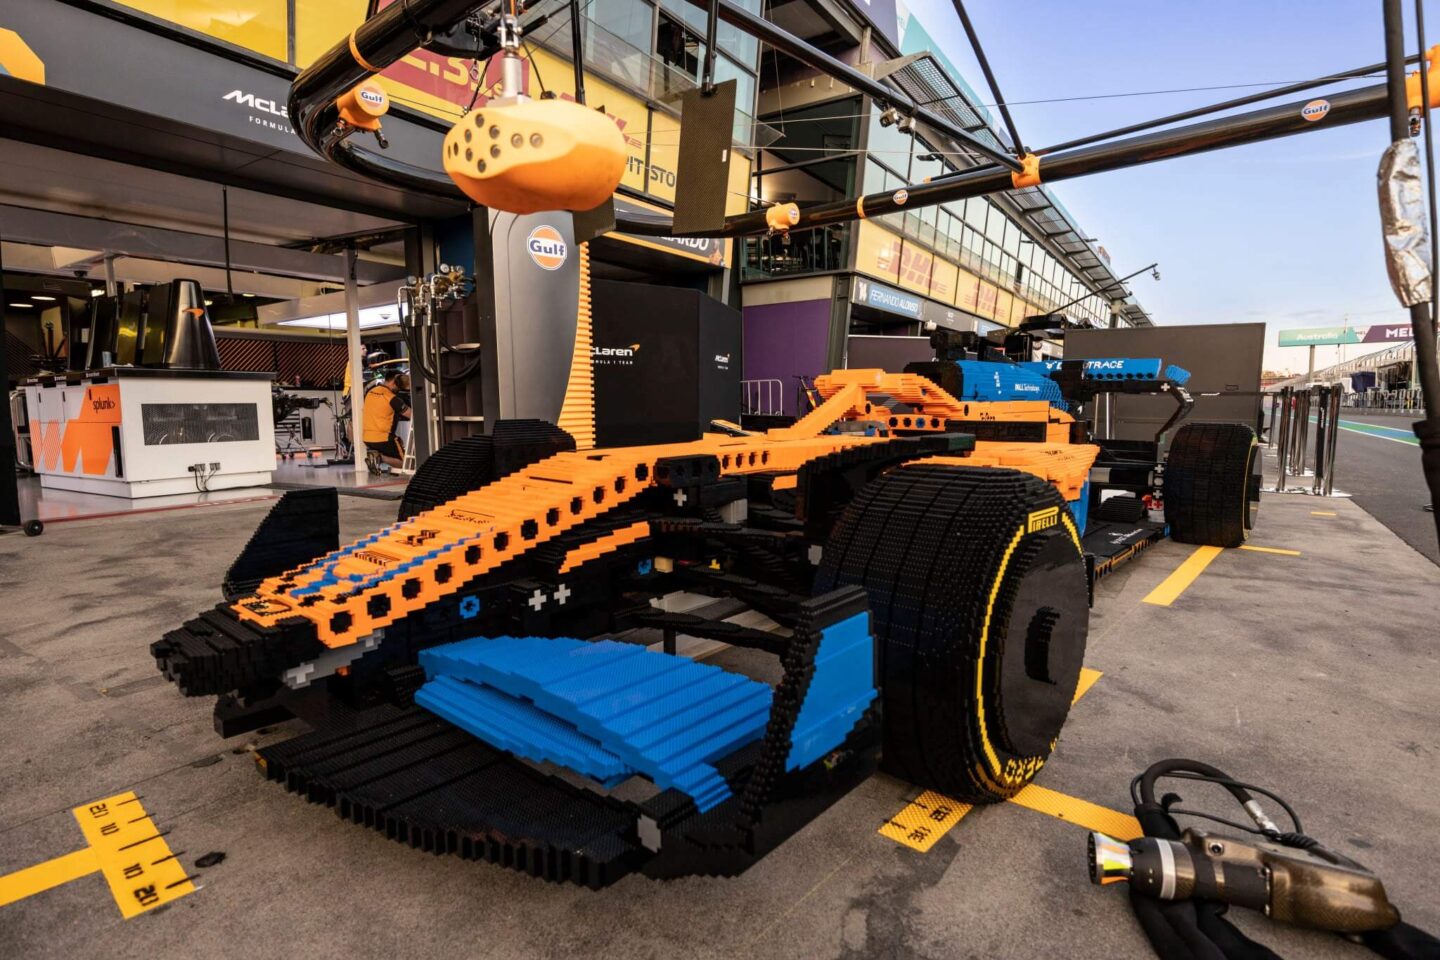 McLaren F1 Lego